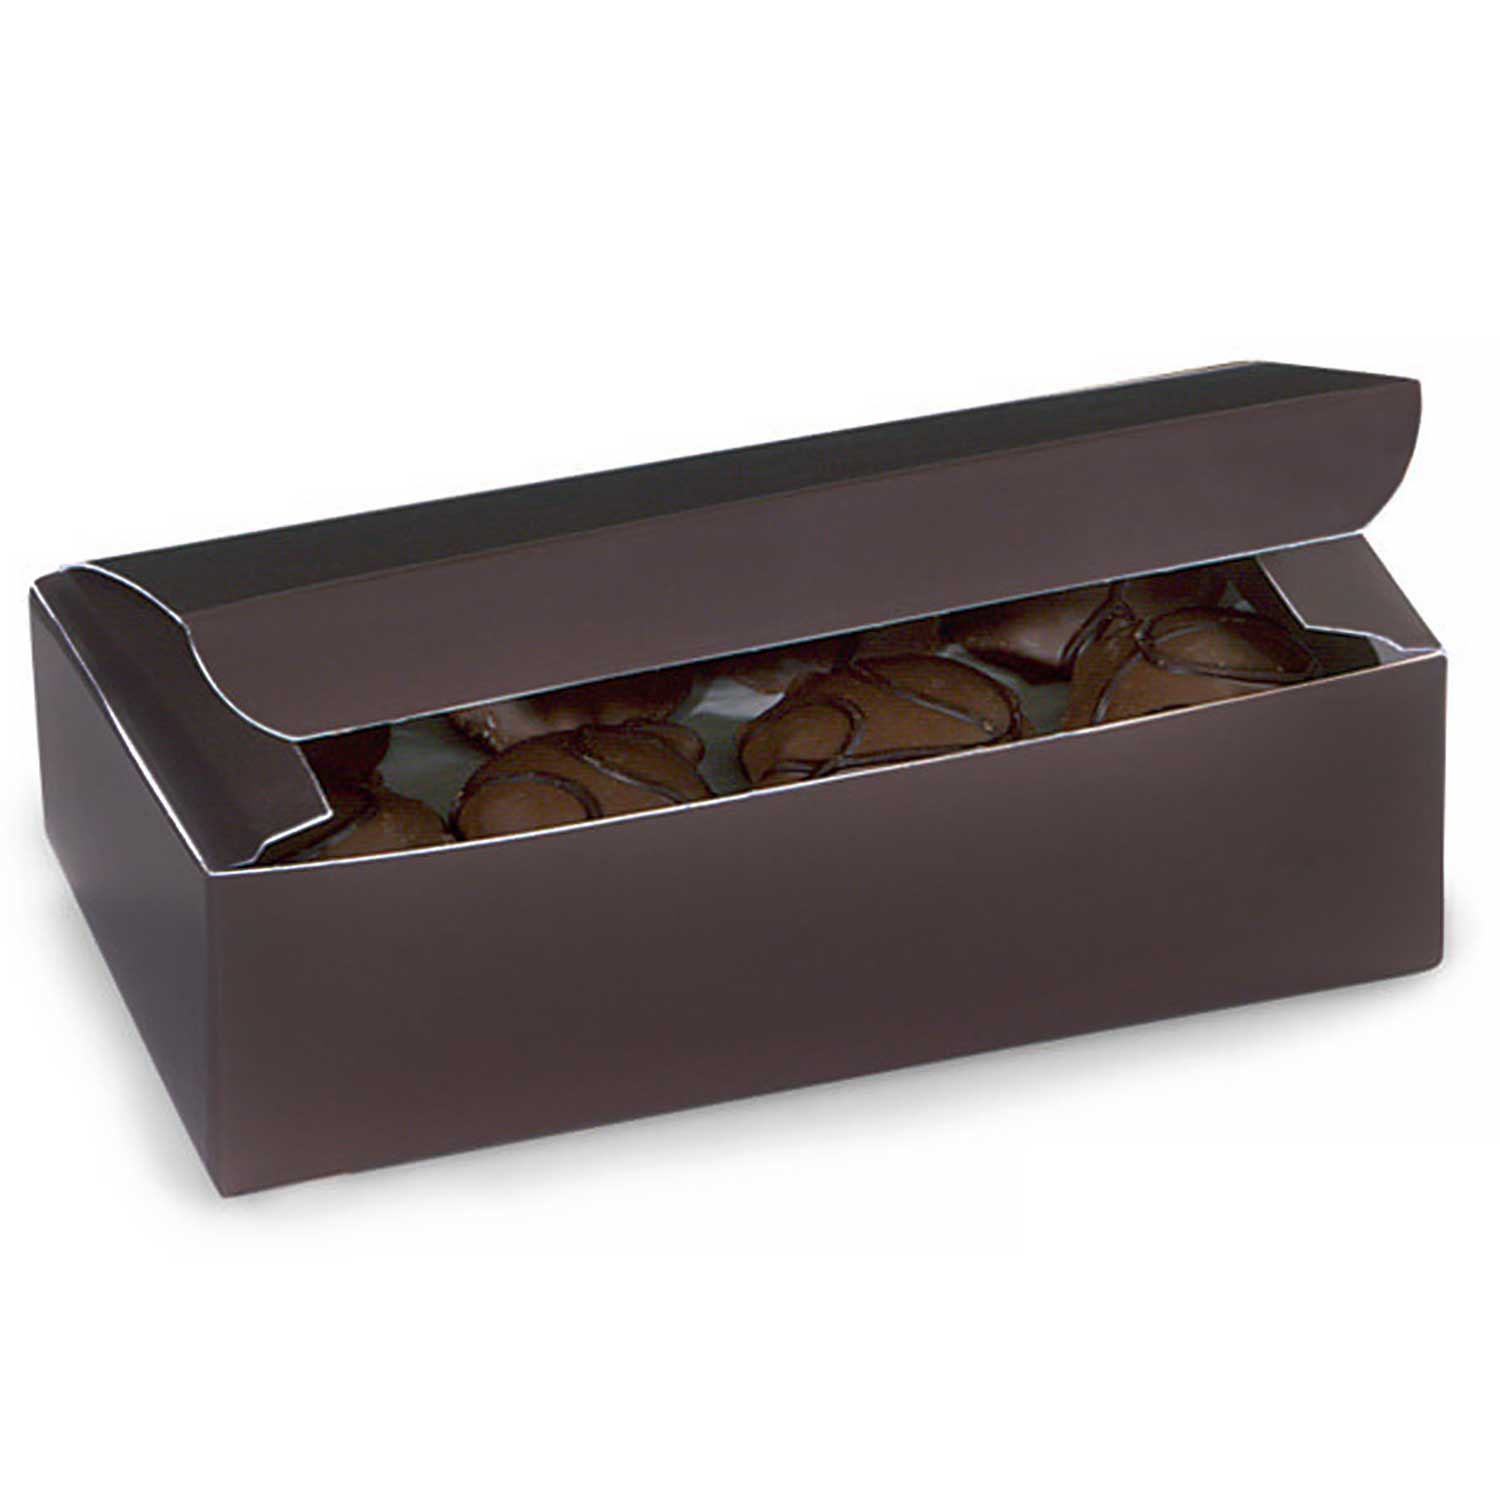 1 lb Brown Candy Box - 1 pc